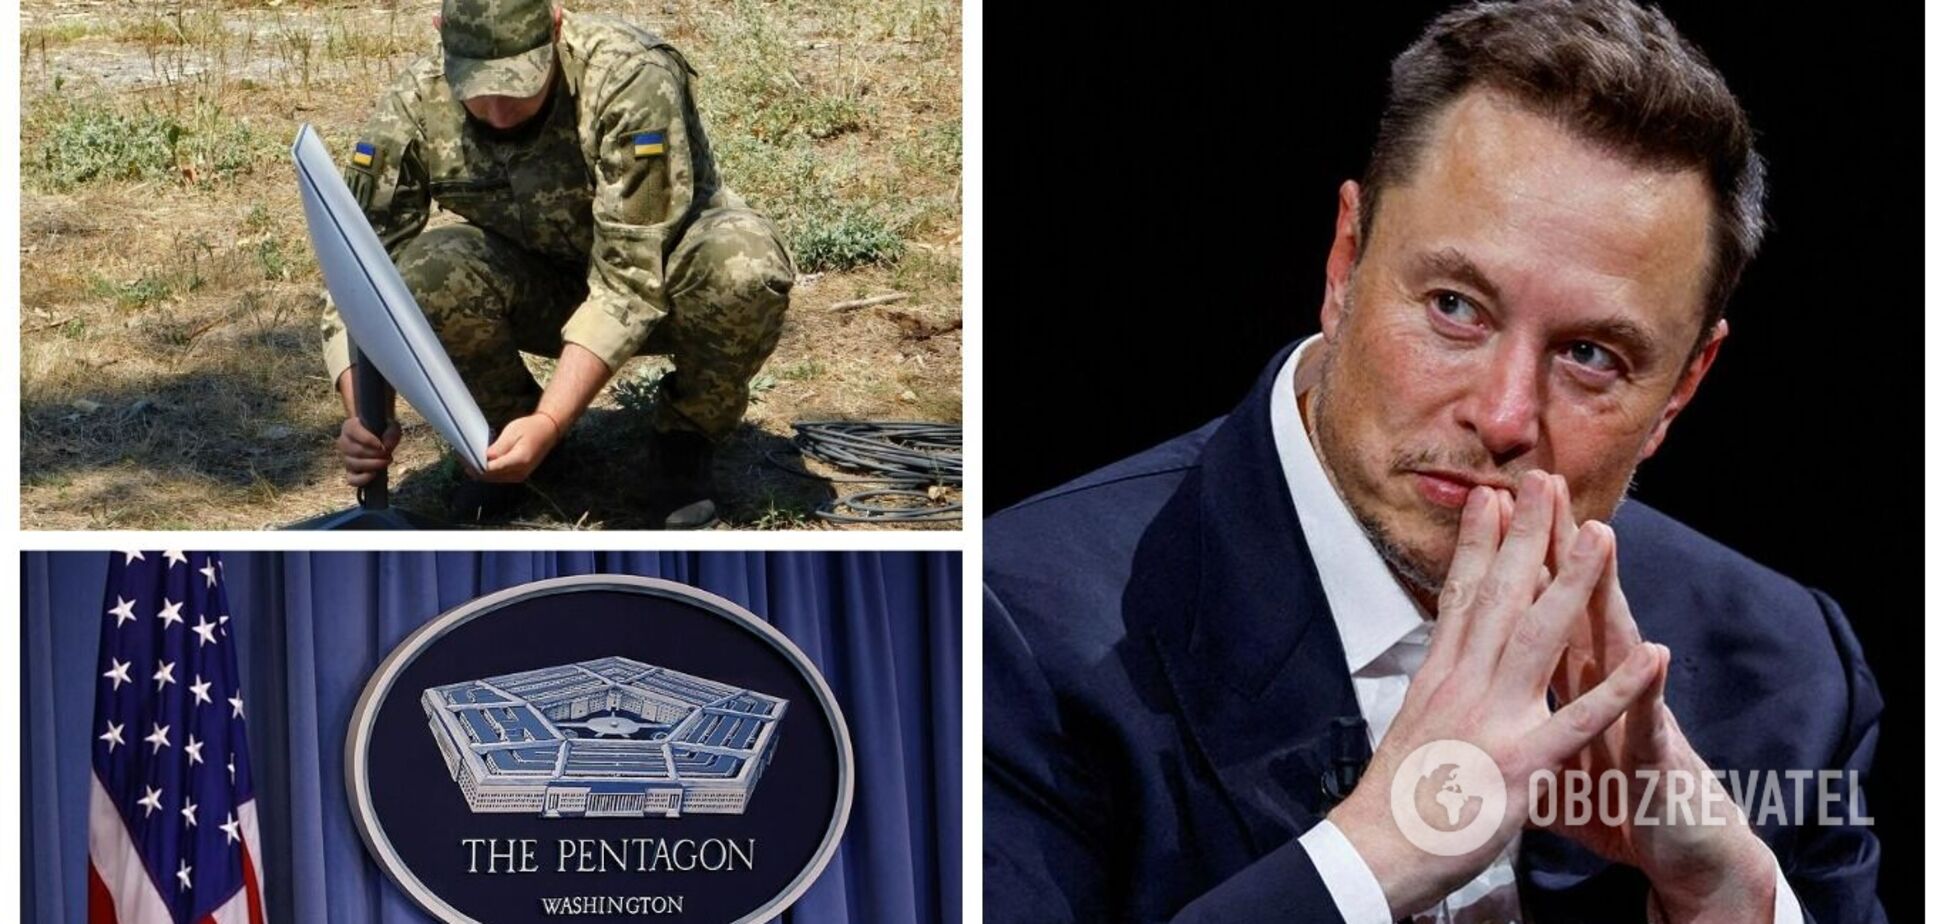 Маск передал Пентагону контроль над частью Starlink: что это значит и связано ли со скандалами вокруг Украины